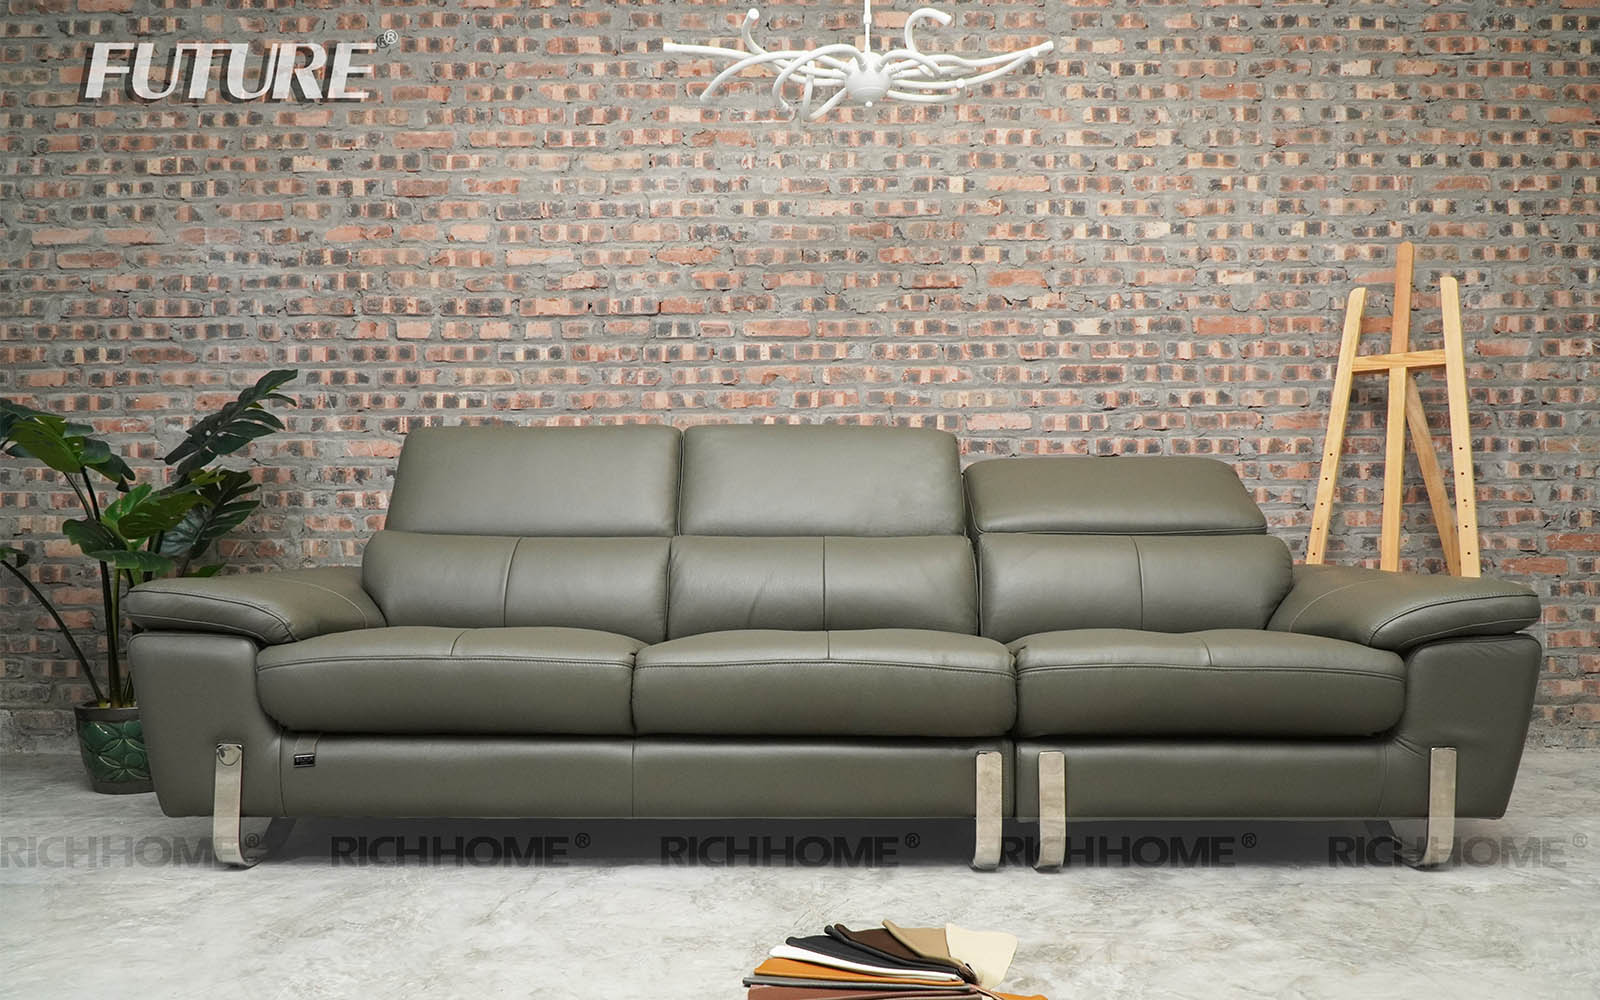 10 mẫu ghế sofa nhỏ gọn cho phòng khách có màu Hot nhất - Ảnh 4